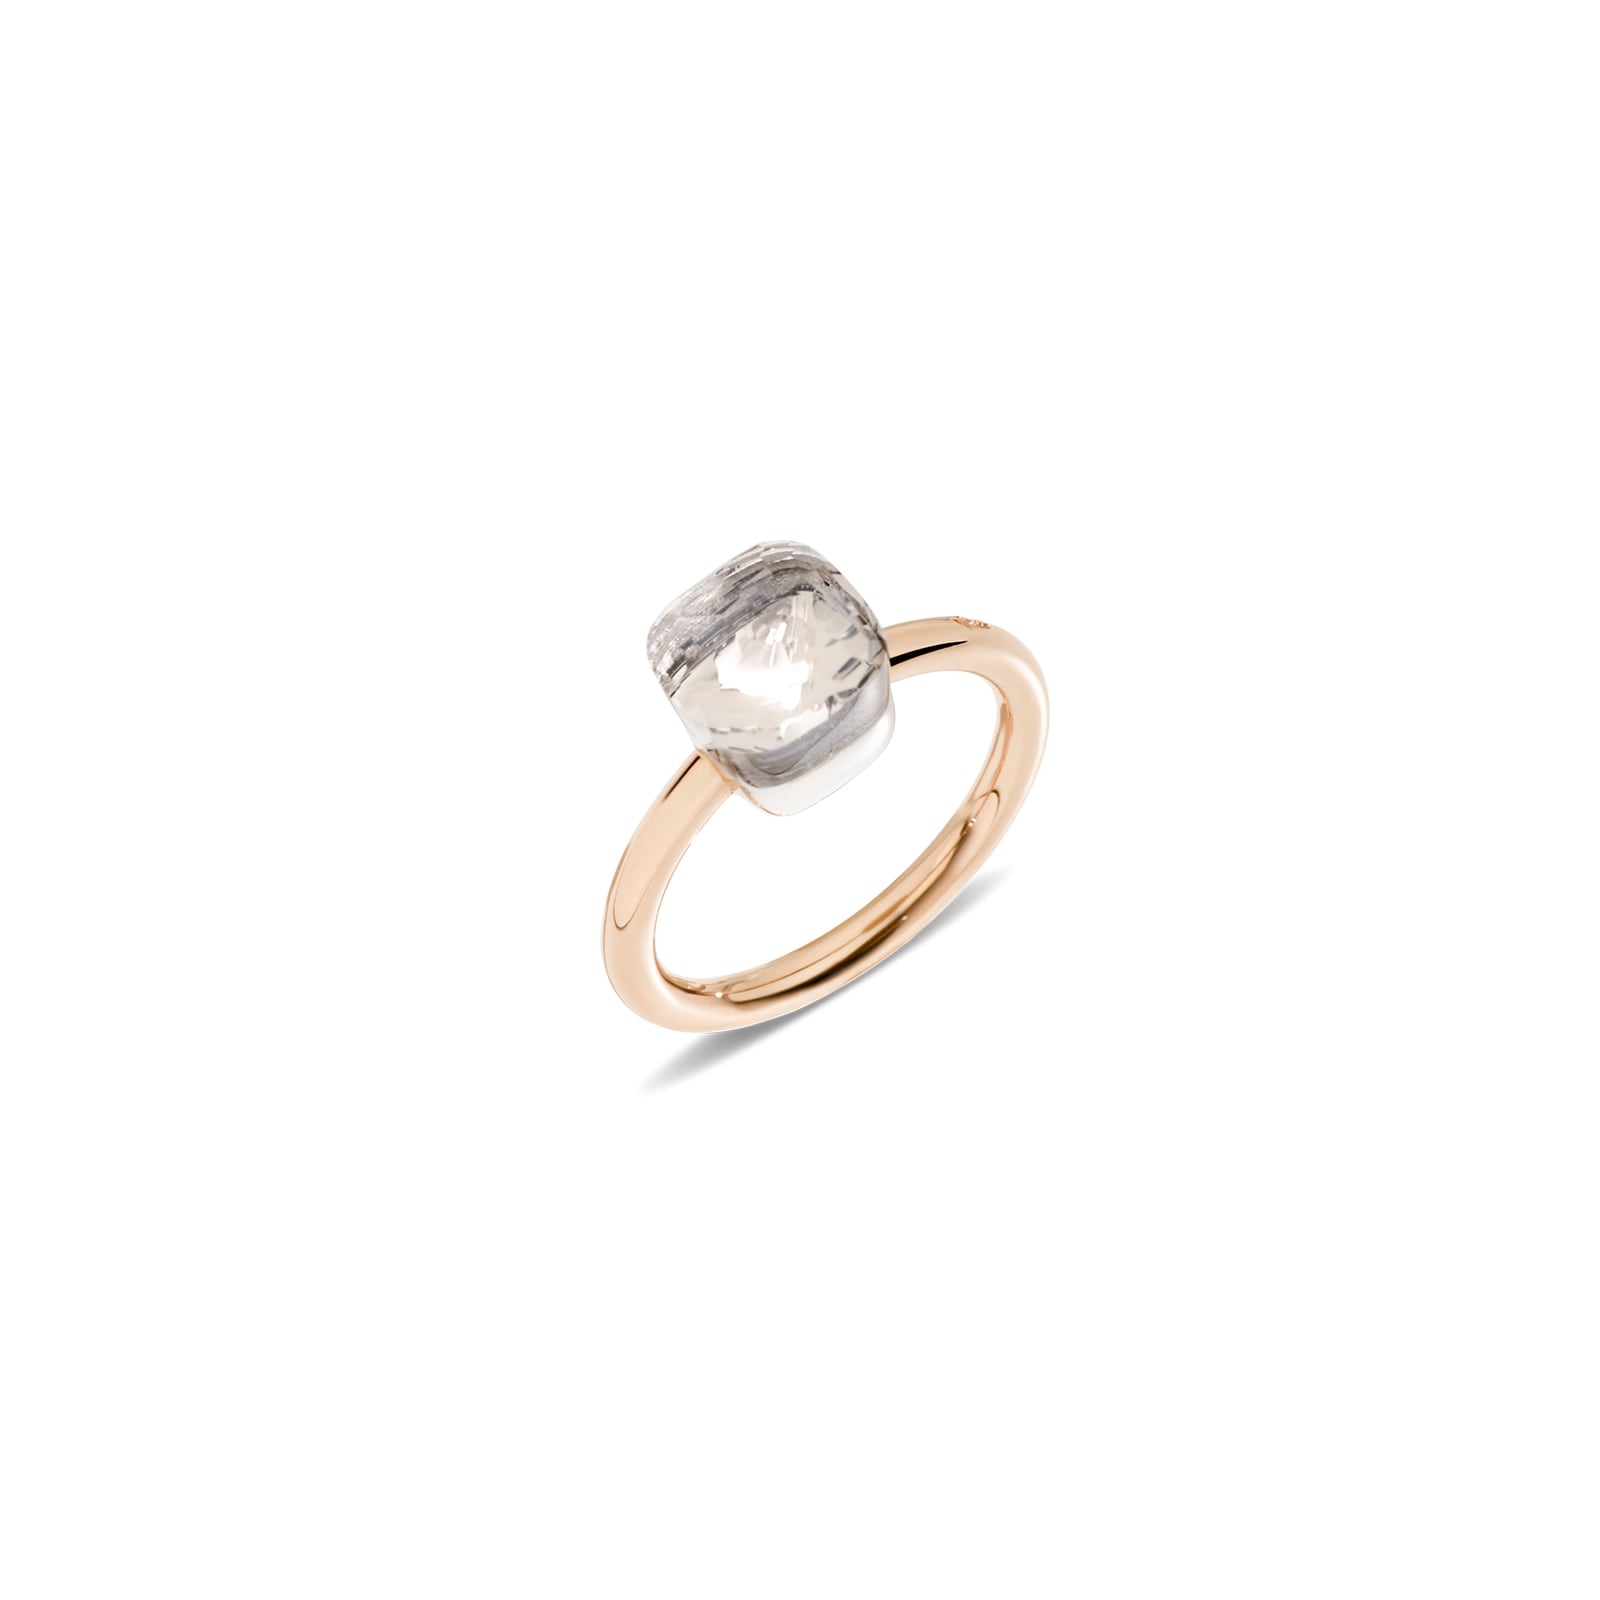 Nudo Petit 18ct Rose & White Gold White Topaz Ring - Ring Size N